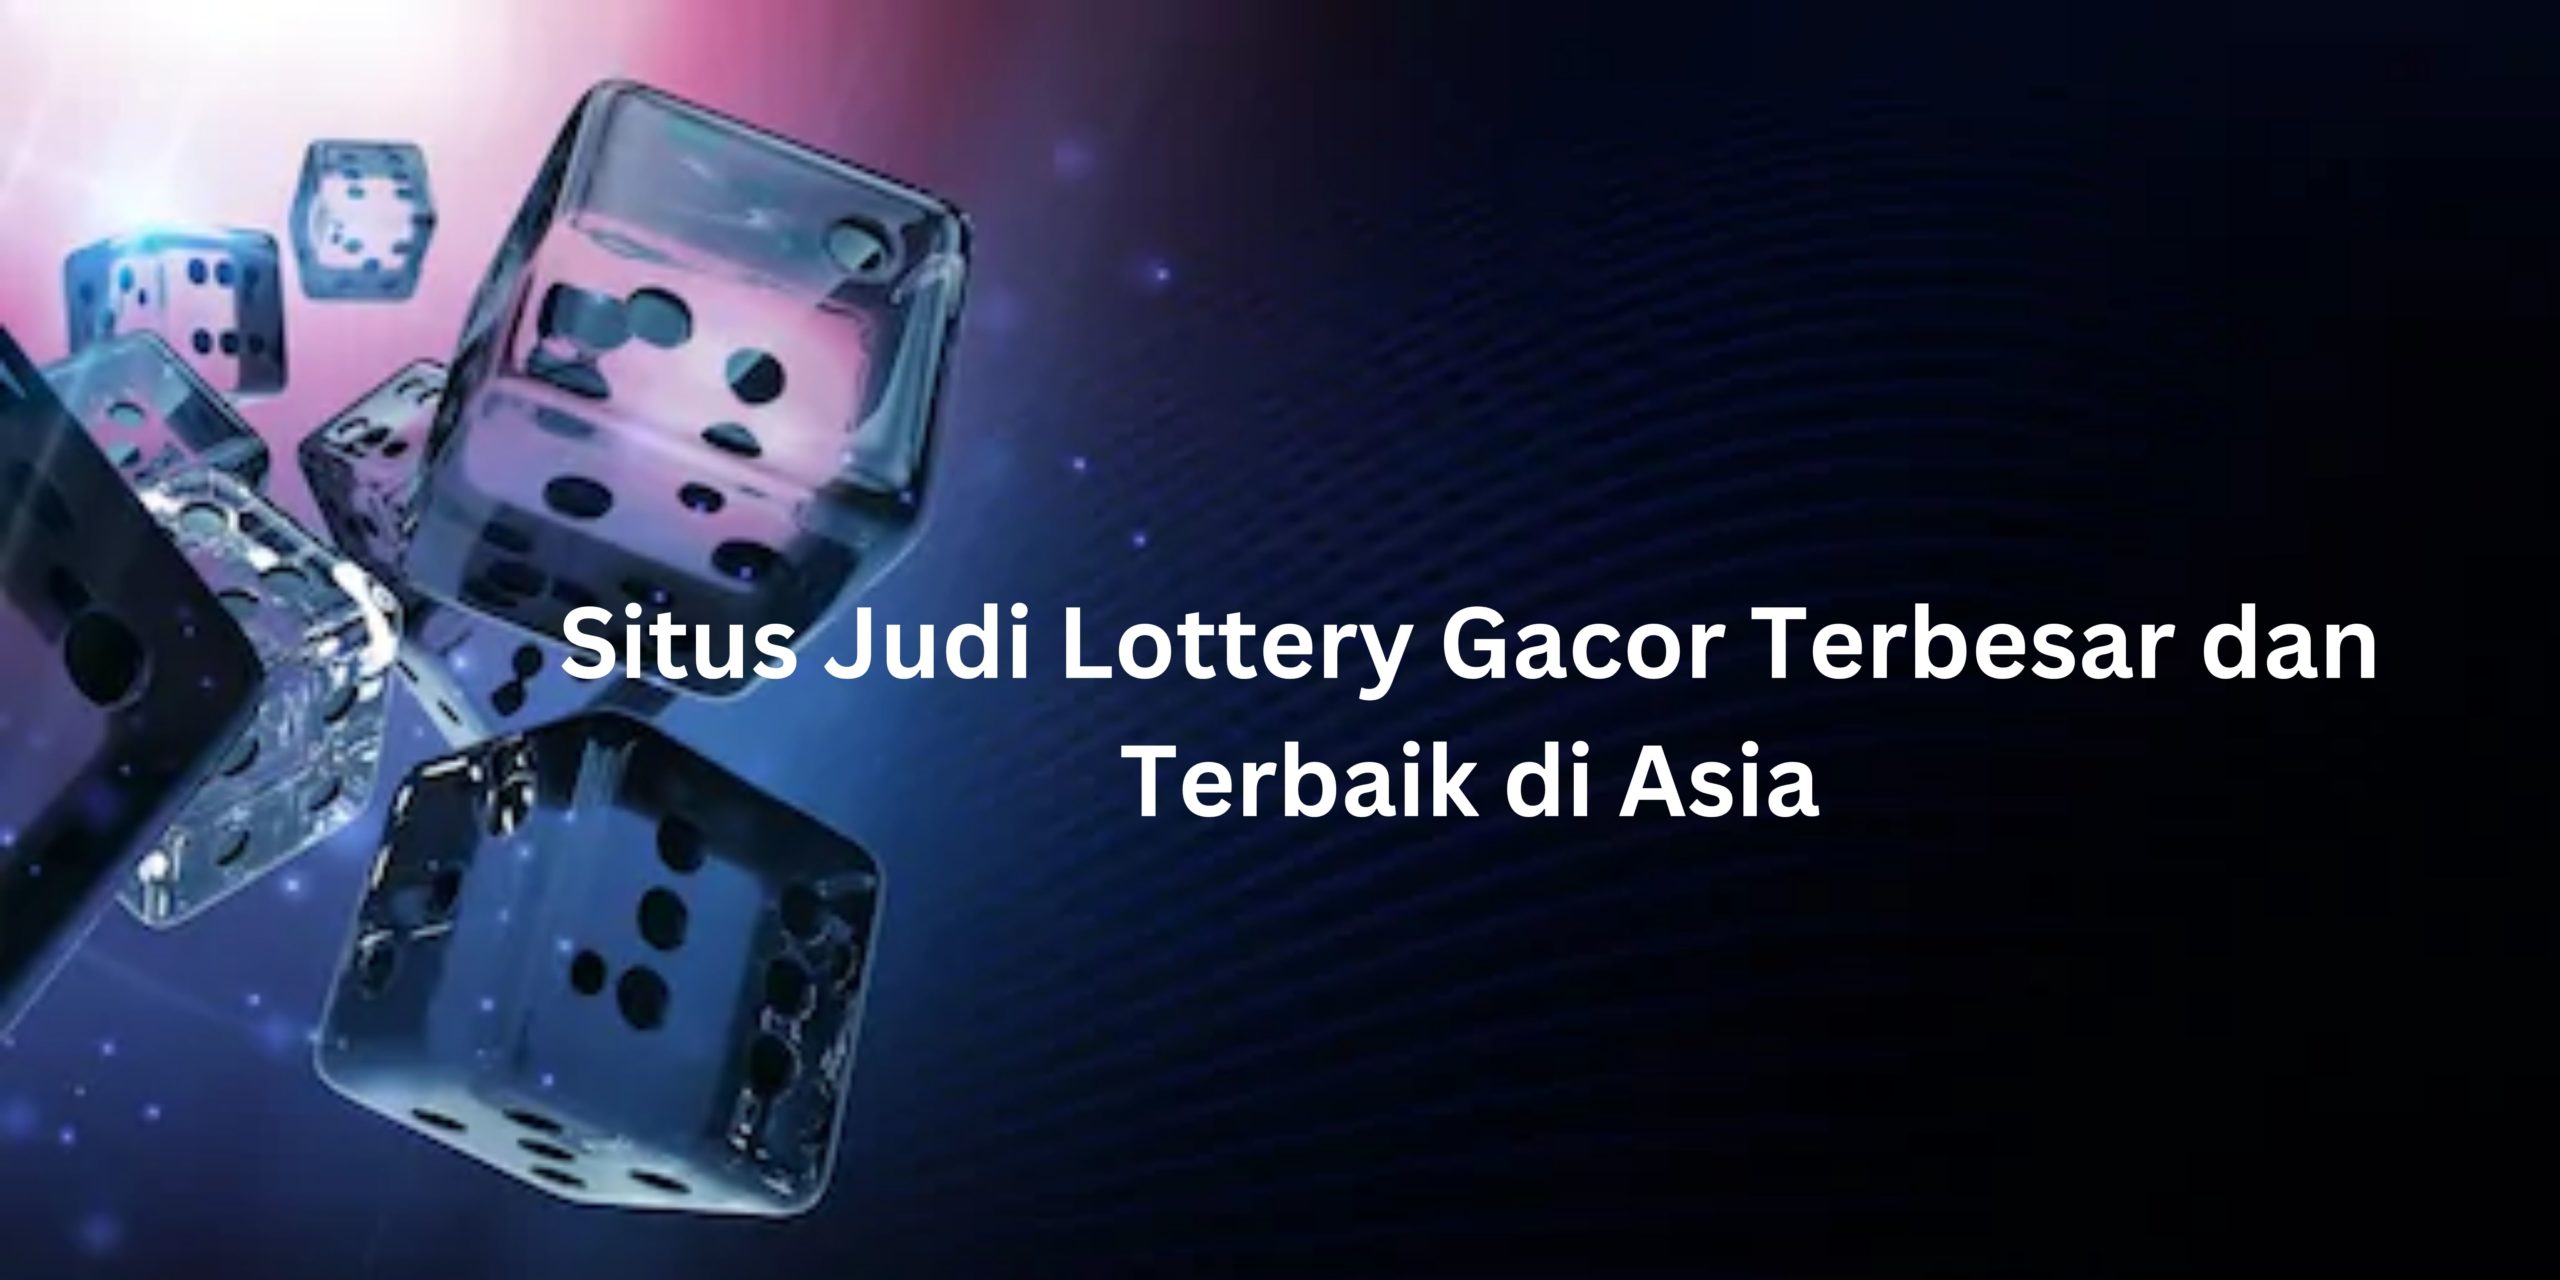 Situs Judi Lottery Gacor Terbesar dan Terbaik di Asia